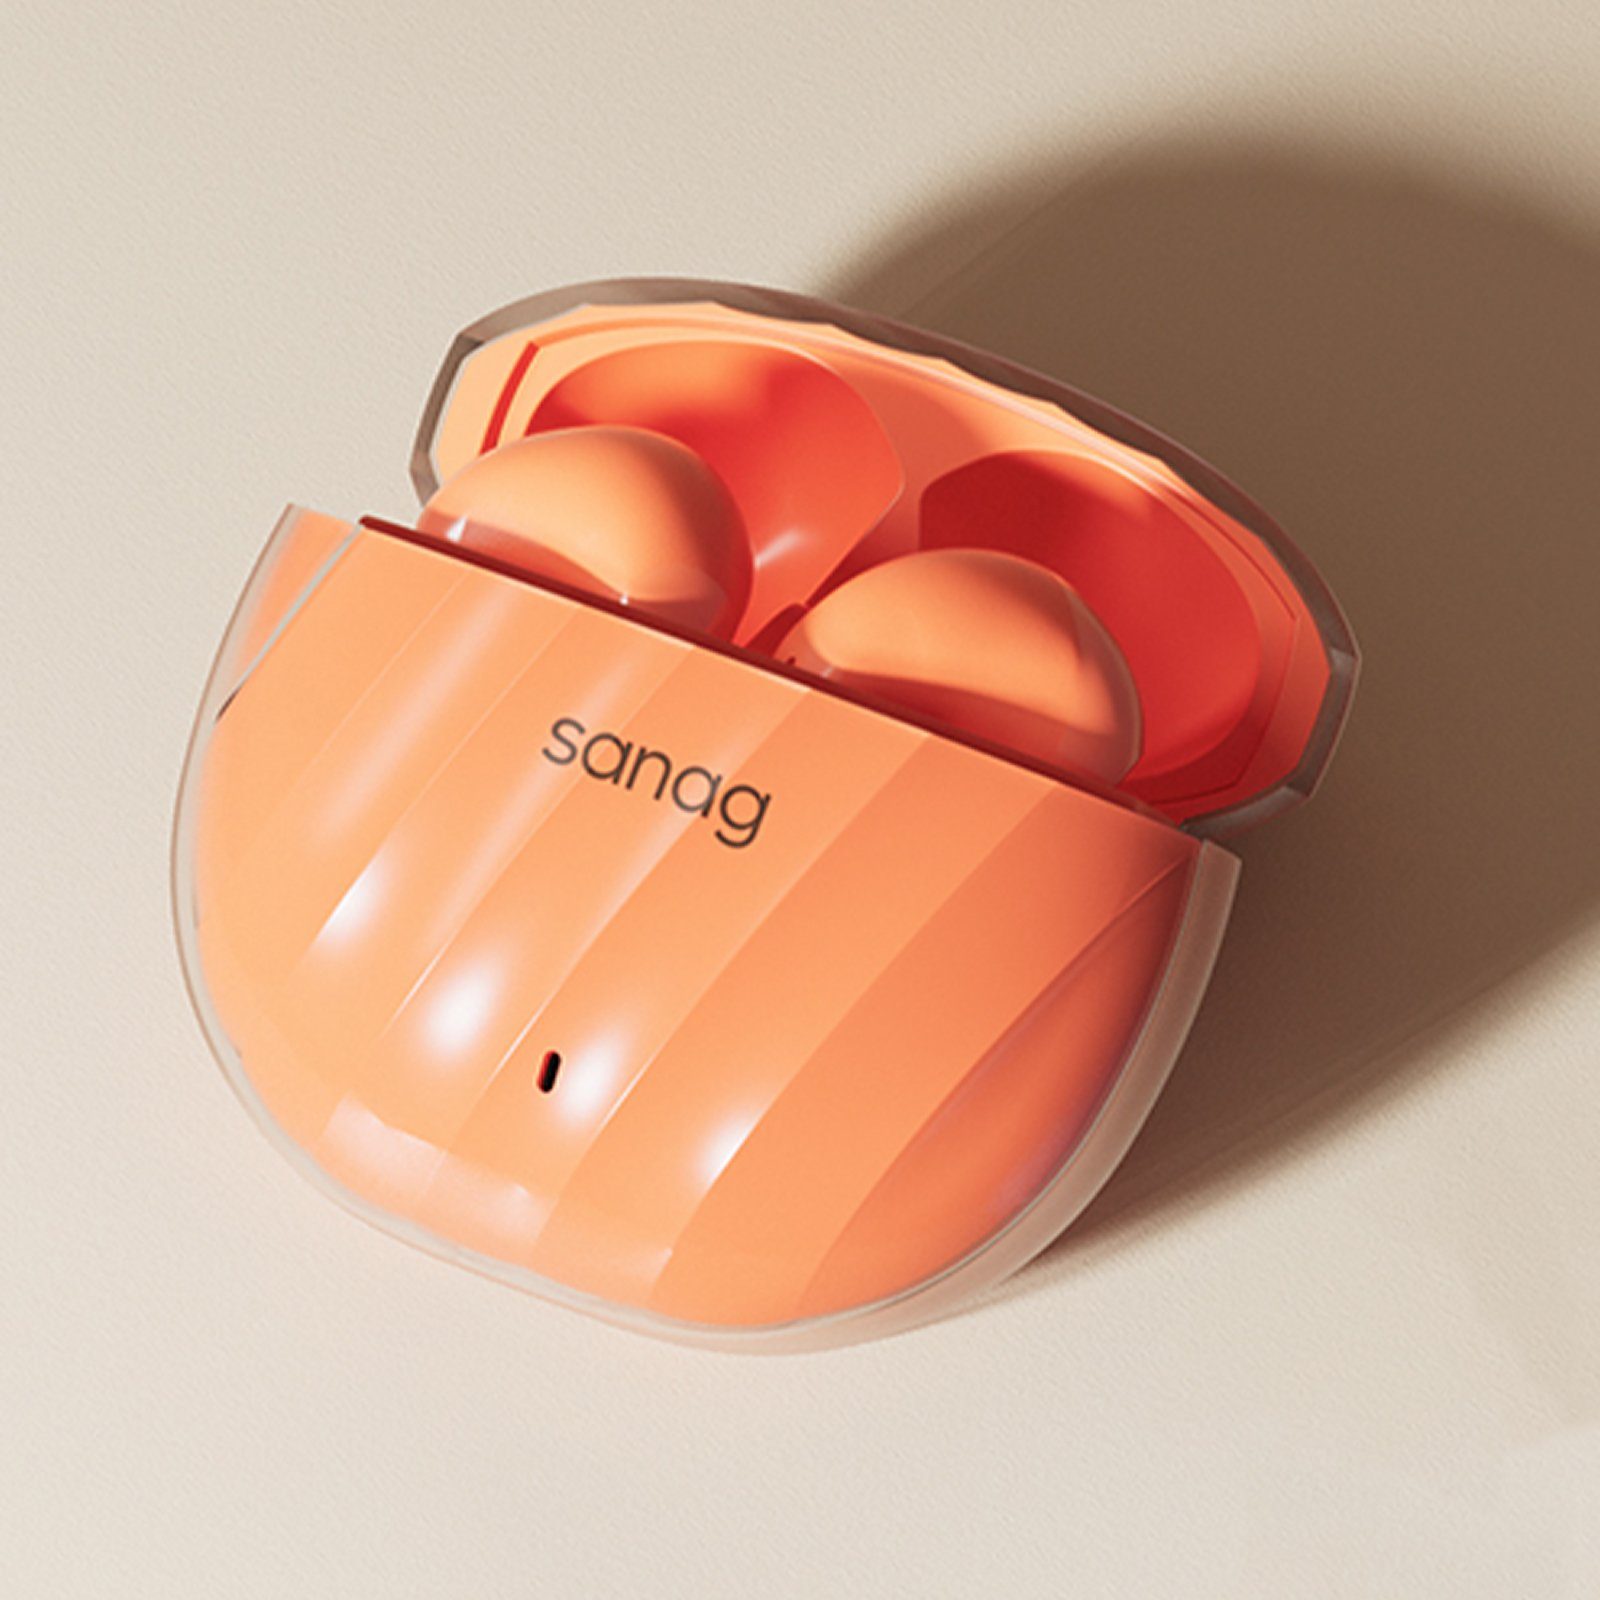 Version Nach Atmos) Orange 28H Yuede 5.3, Wasserdicht Dolby Surround Headphones, In-Ear-Kopfhörer Kopfhörer HD-Mikrofon (ANC-Geräuschunterdrückung, Bluetooth Wireless IPX7,